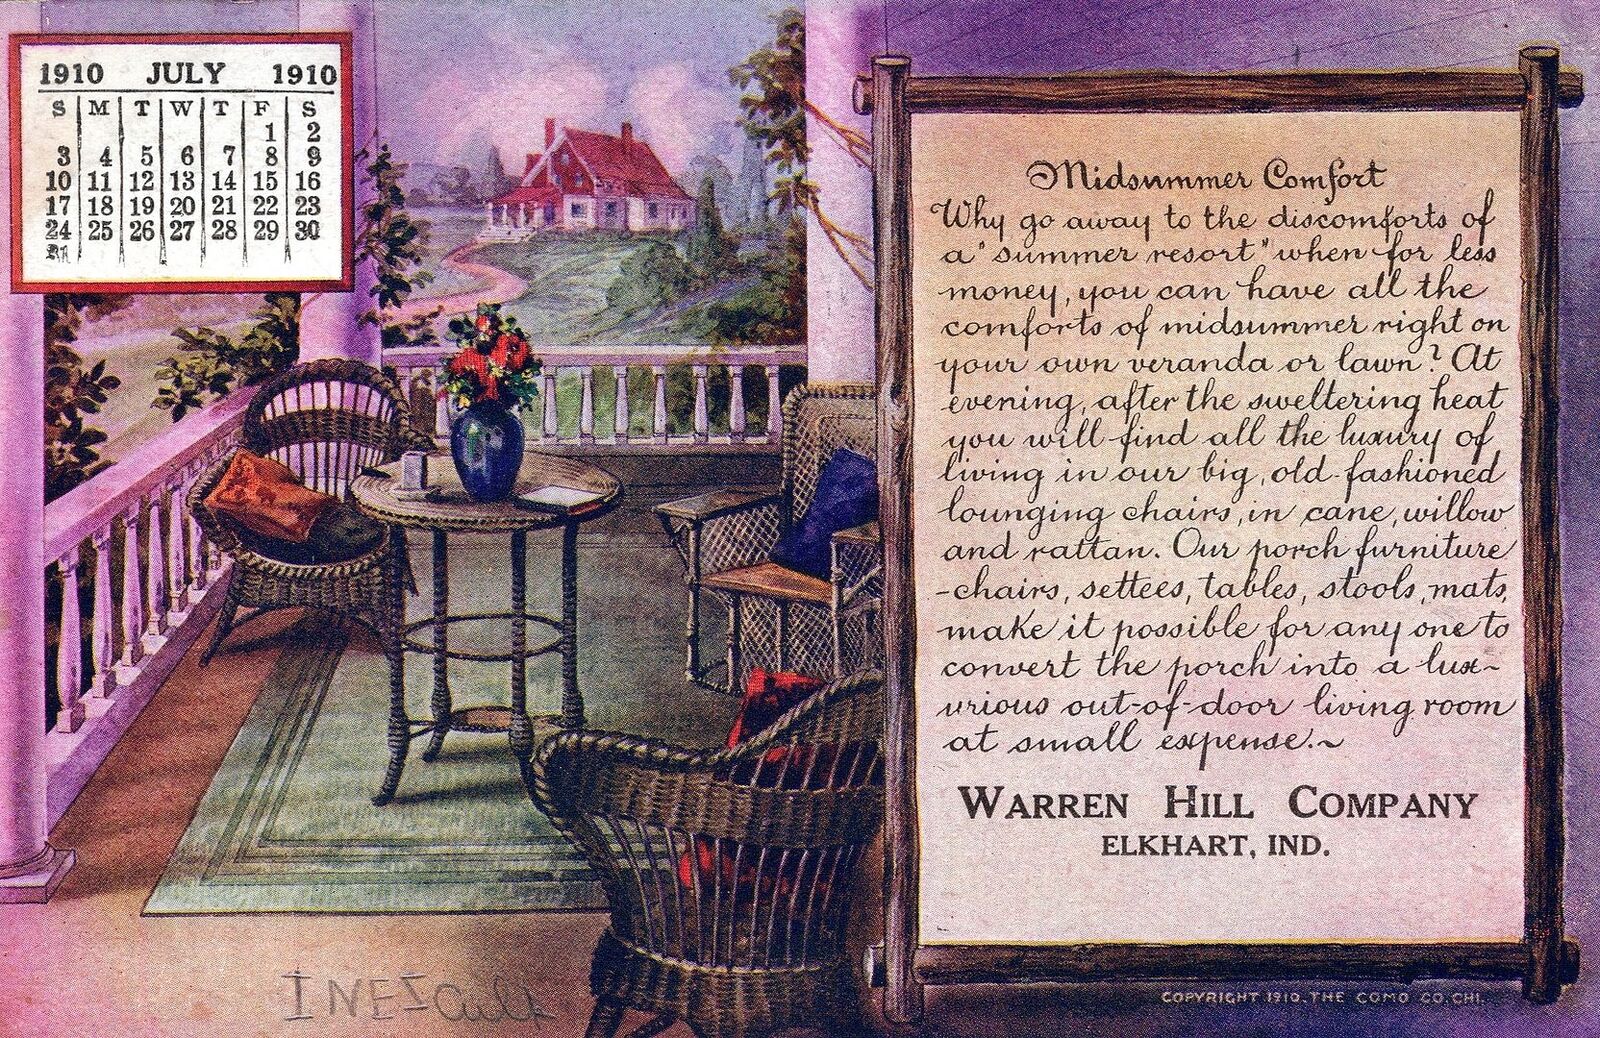 ELKHART IN - Warren Hill Company July 1910 Midsummer Comfort Calendar Postcard